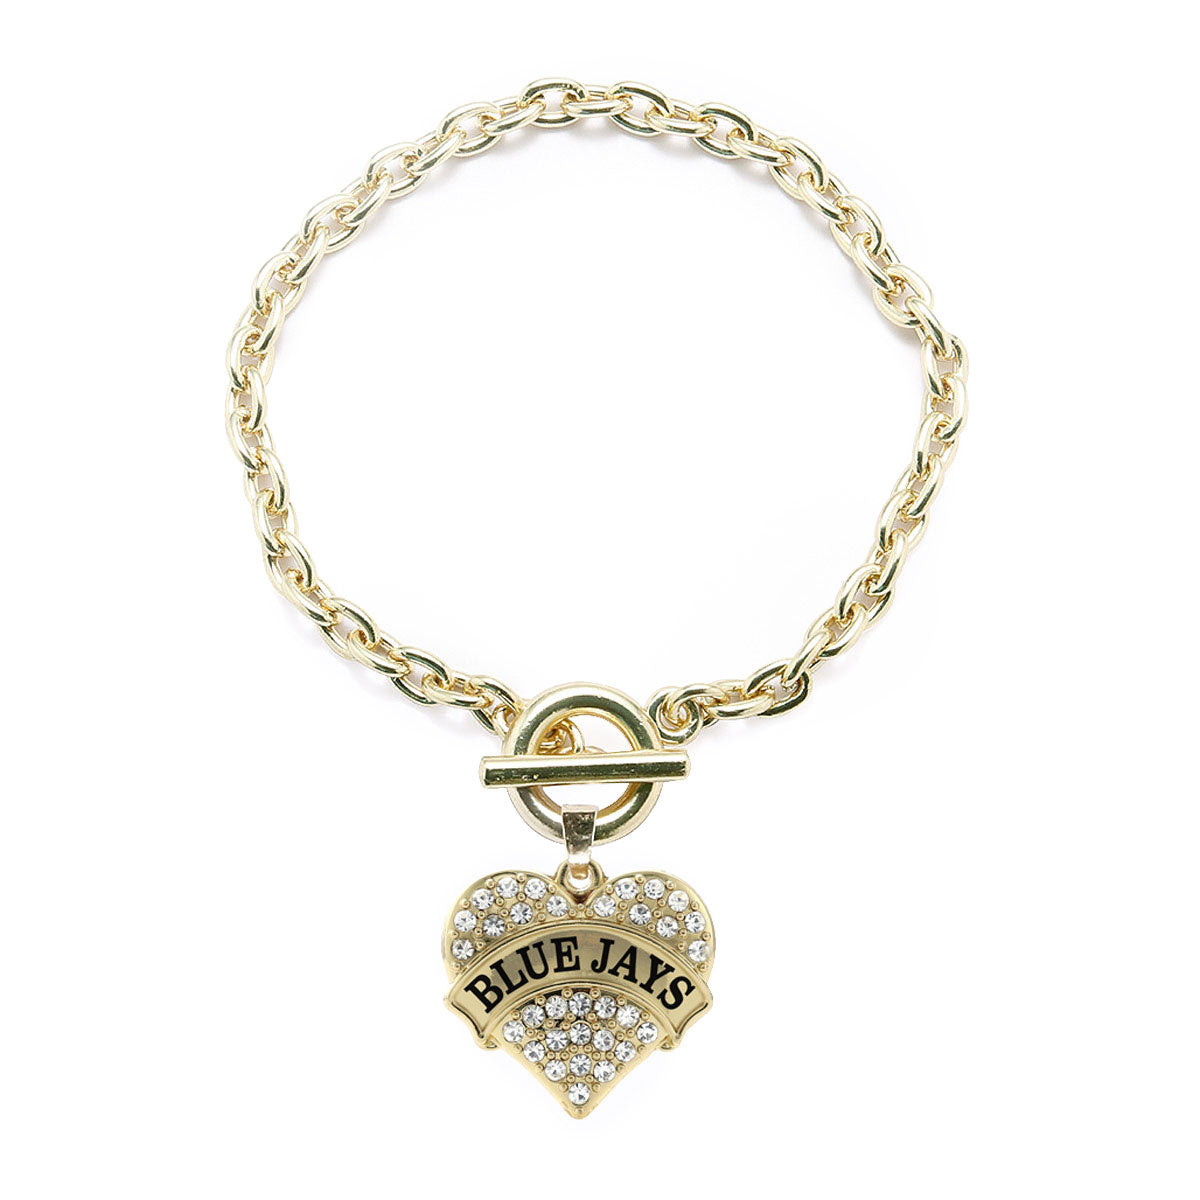 Gold Blue Jays Pave Heart Charm Toggle Bracelet